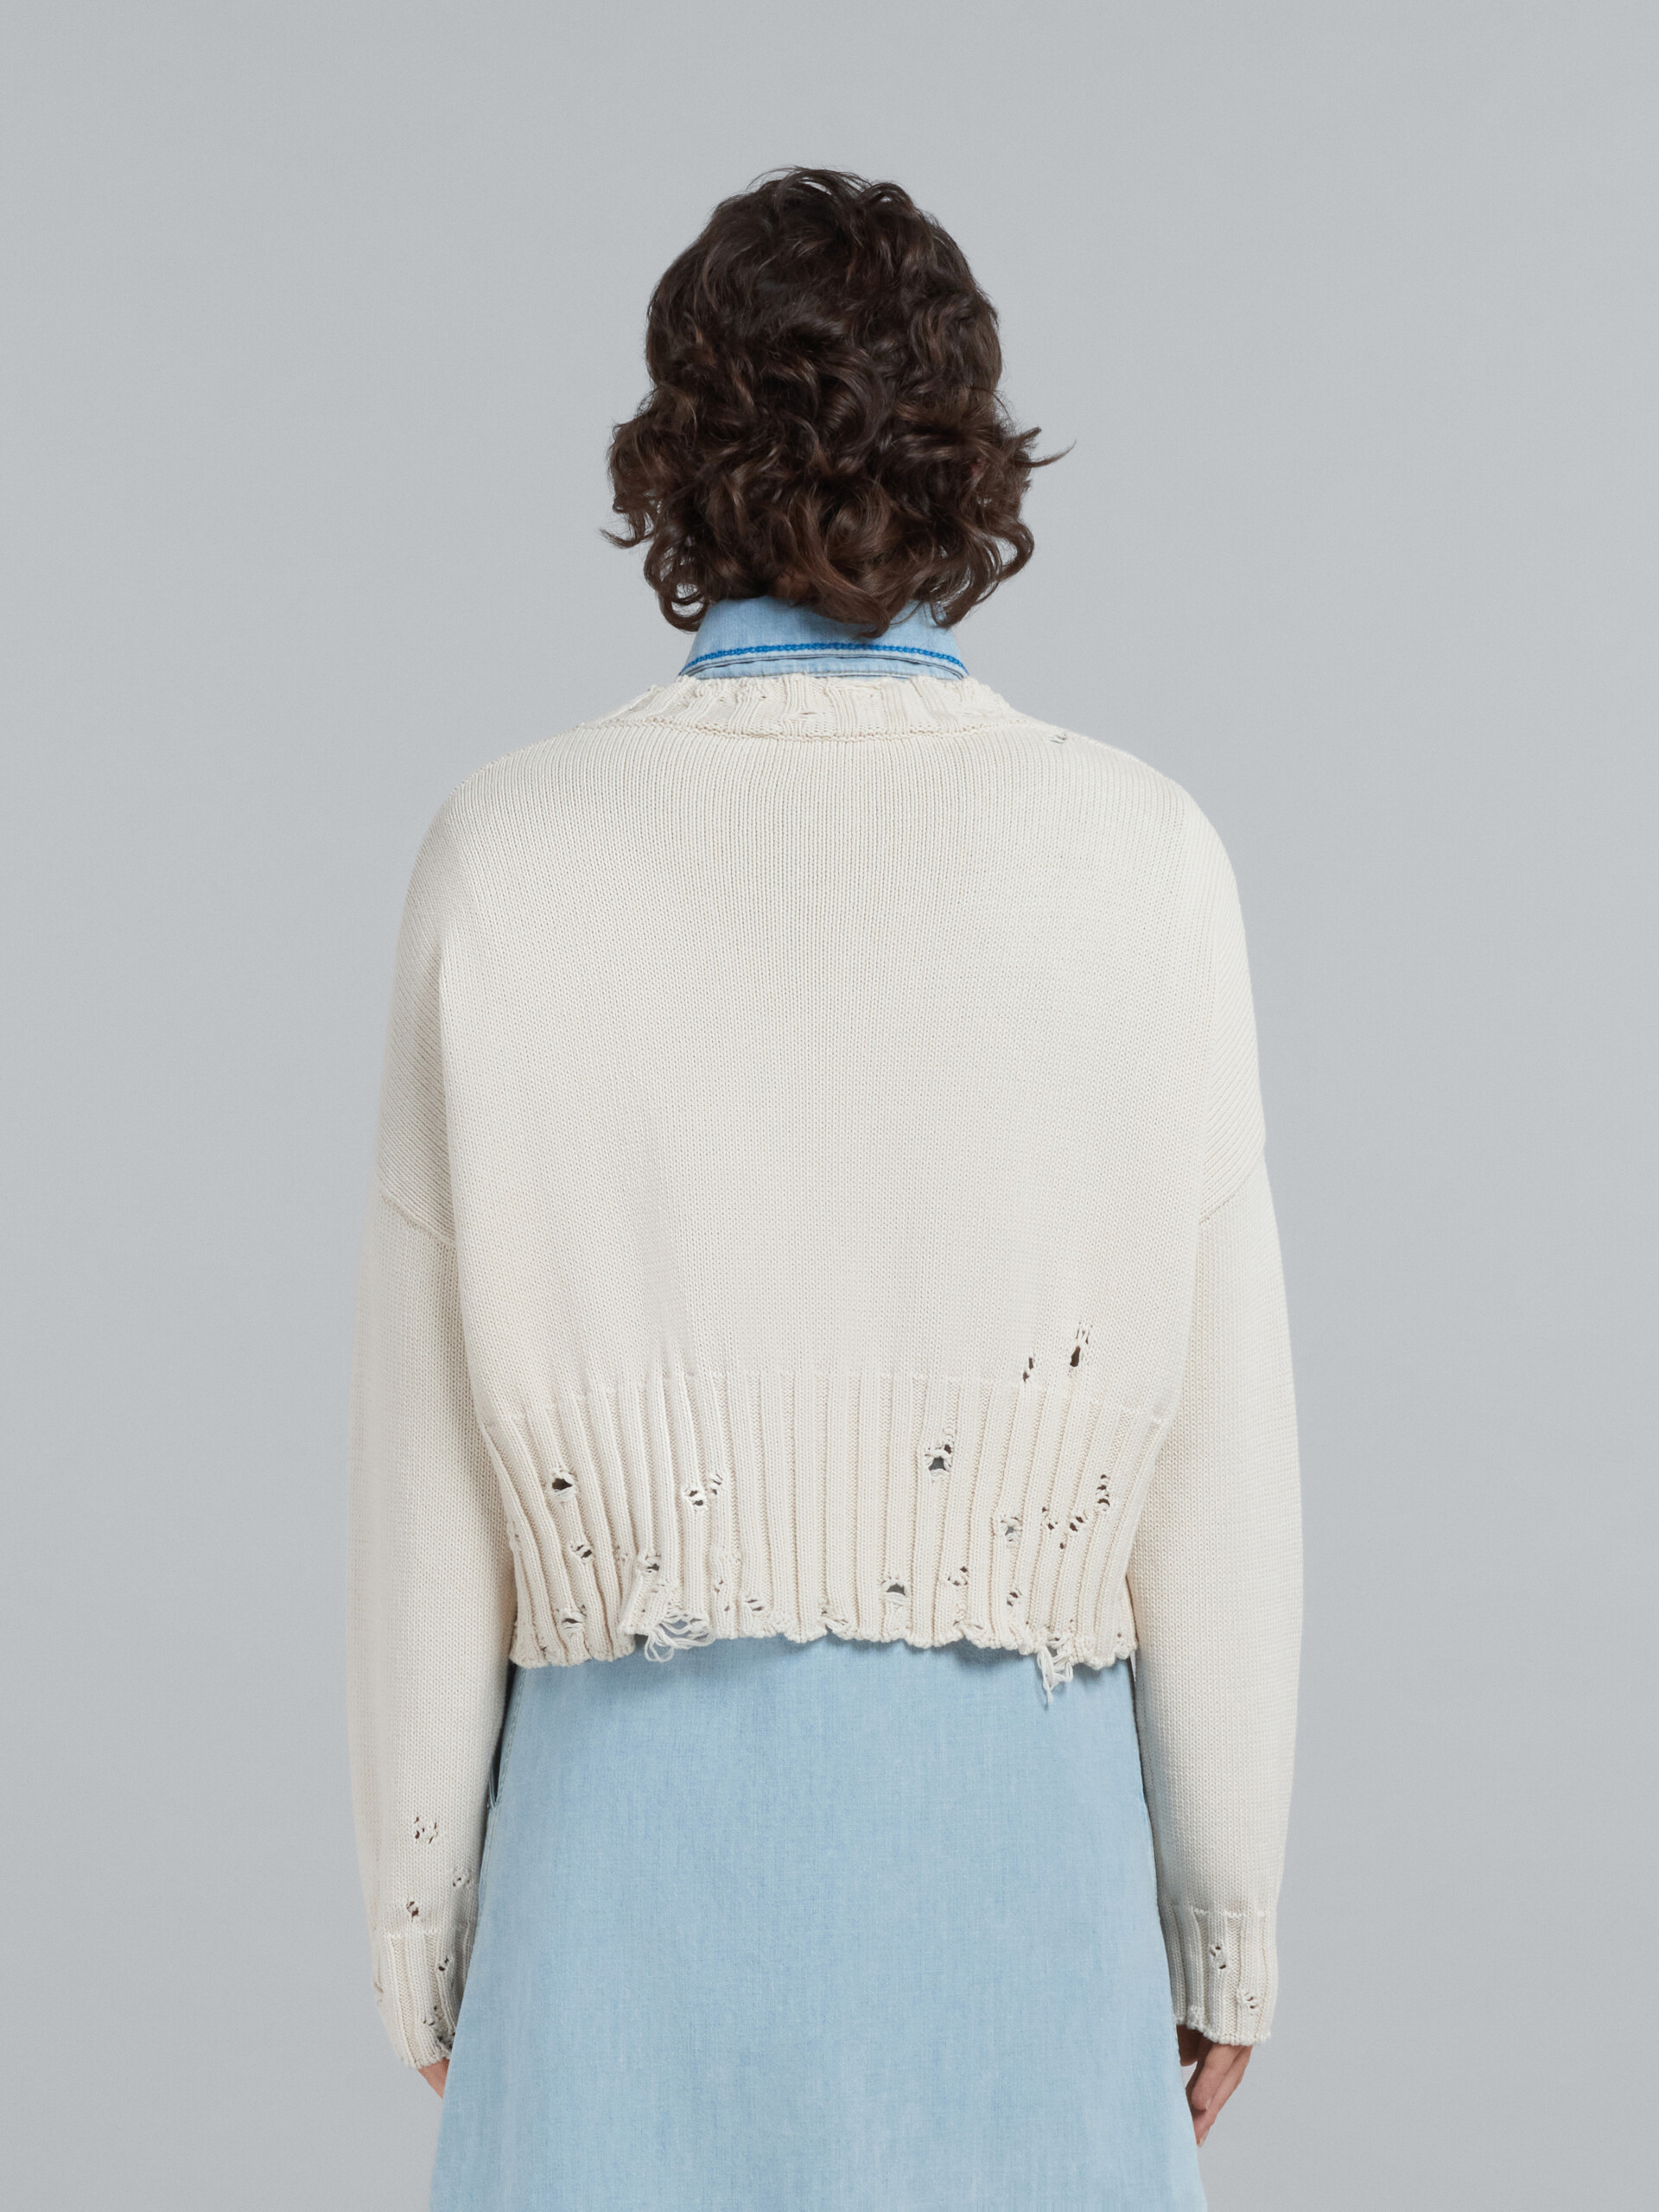 Jersey corto de algodón blanco - jerseys - Image 3